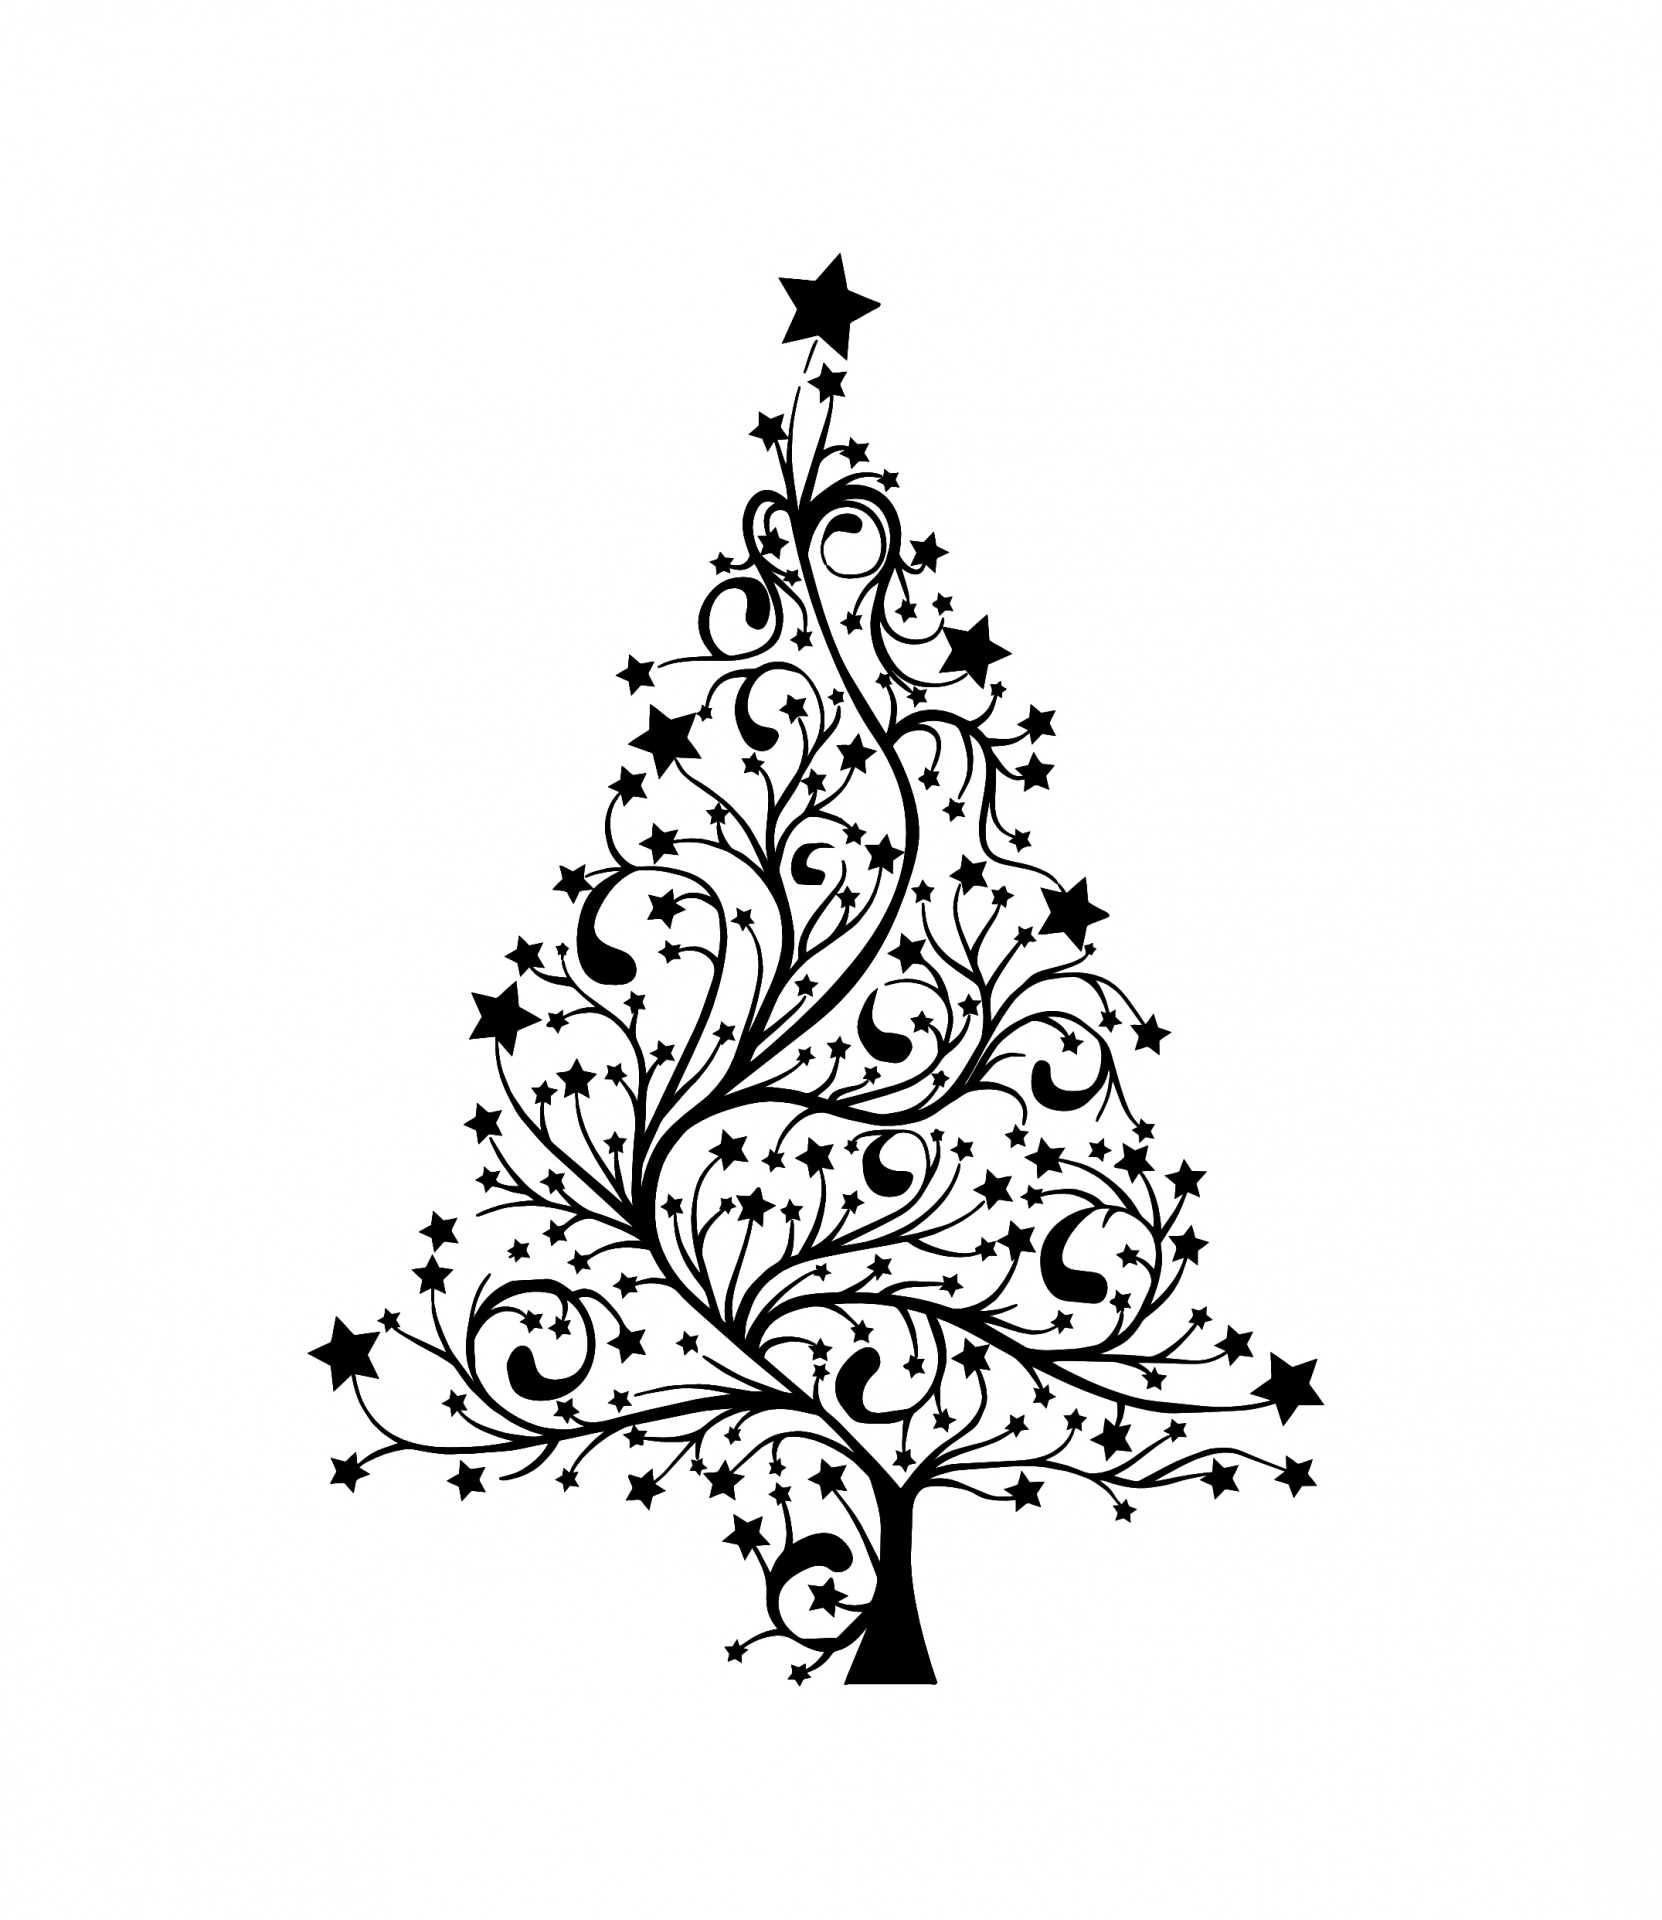 Cartão moderno da árvore de Natal